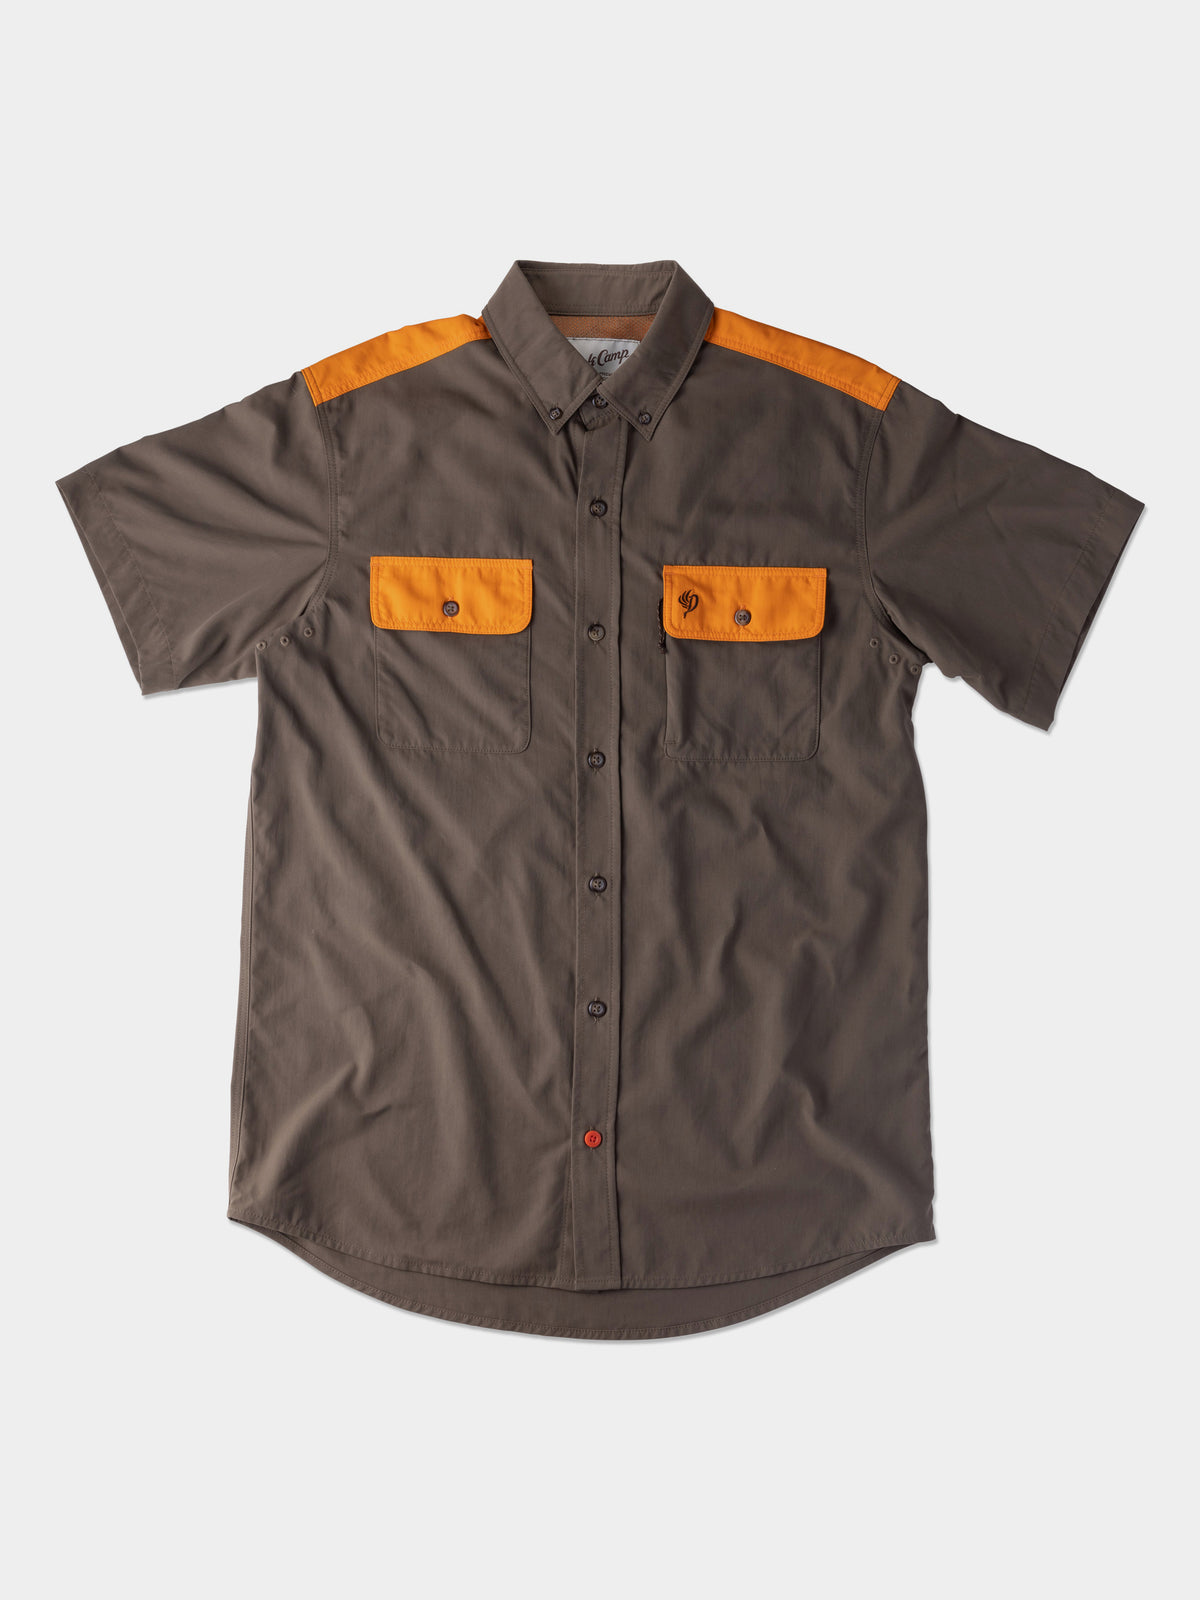 Lightweight Hunting Shirt Short Sleeve - Pin Oak Upland